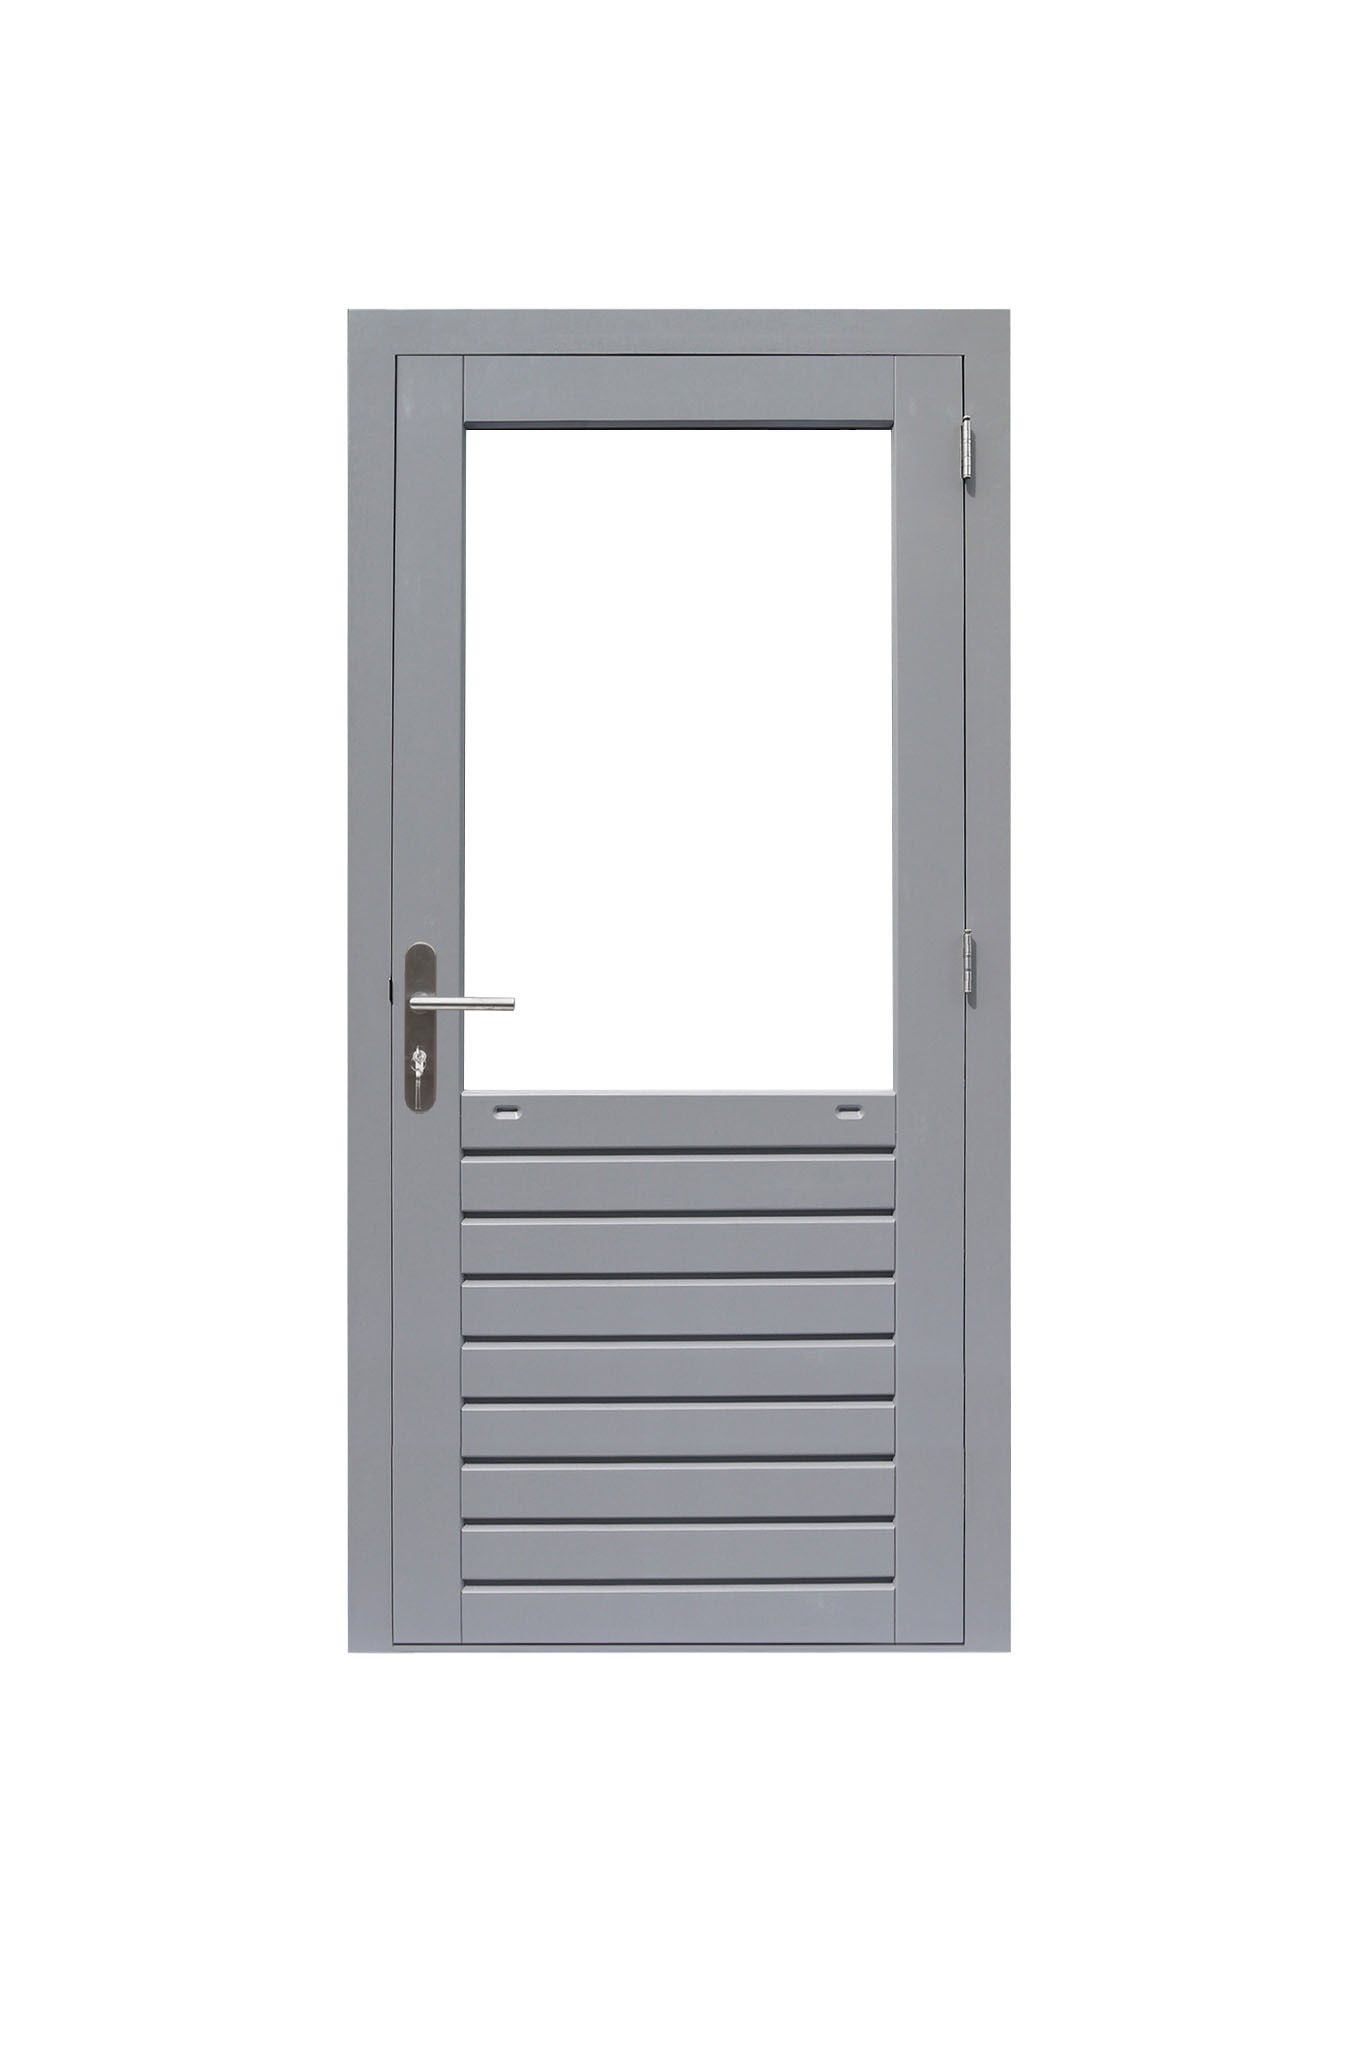 Hardhouten enkele 1-ruits deur Prestige met dubbelglas, rechtsdraaiend, 109 x 221 cm, grijs gegrond